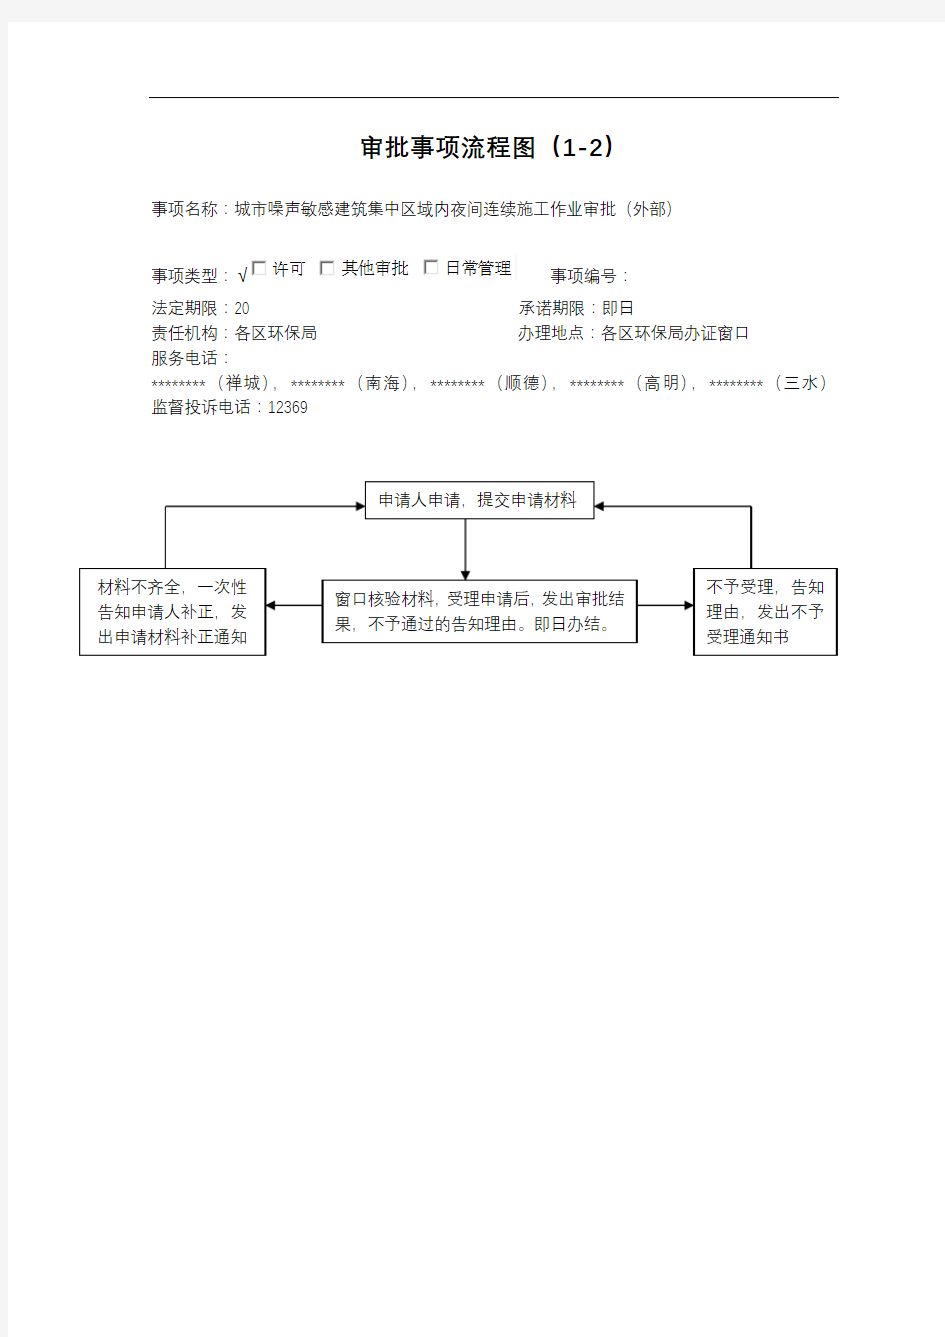 审批事项流程图(1-1)【模板】